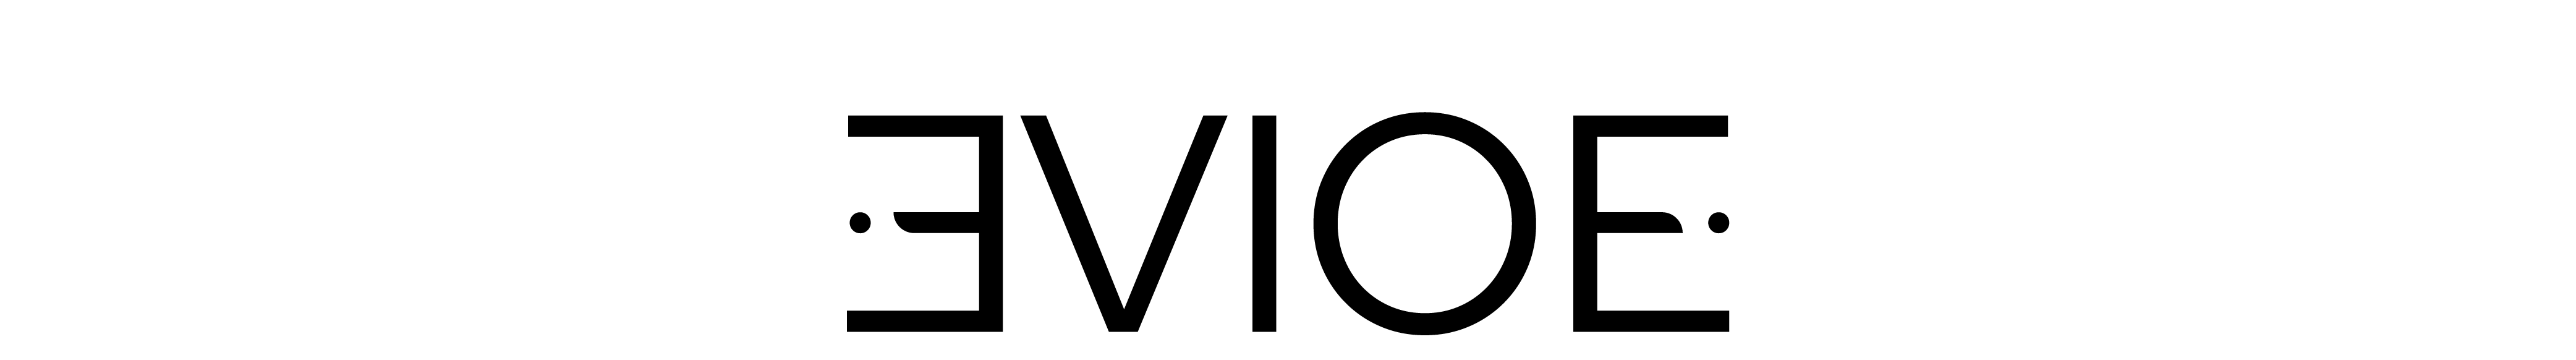 Evioe Design's profile banner